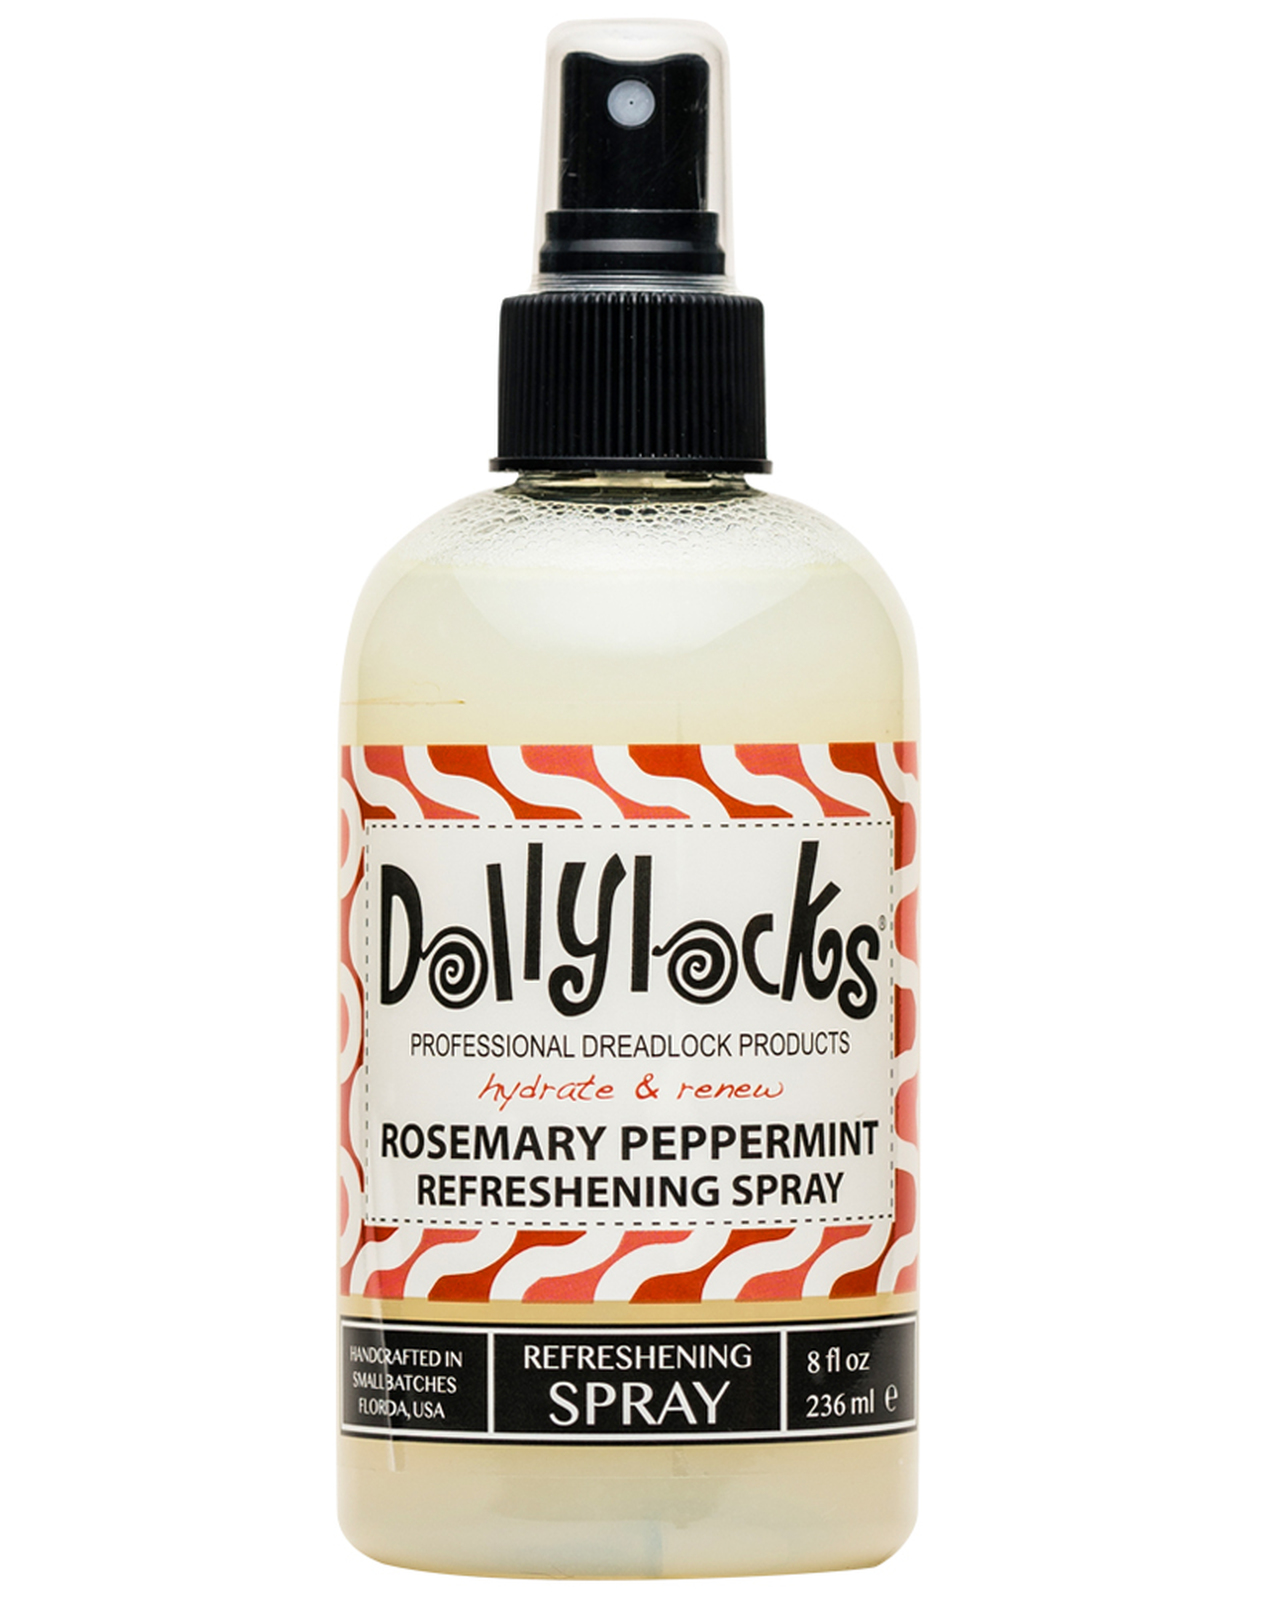 Dollylocks refreshing spray